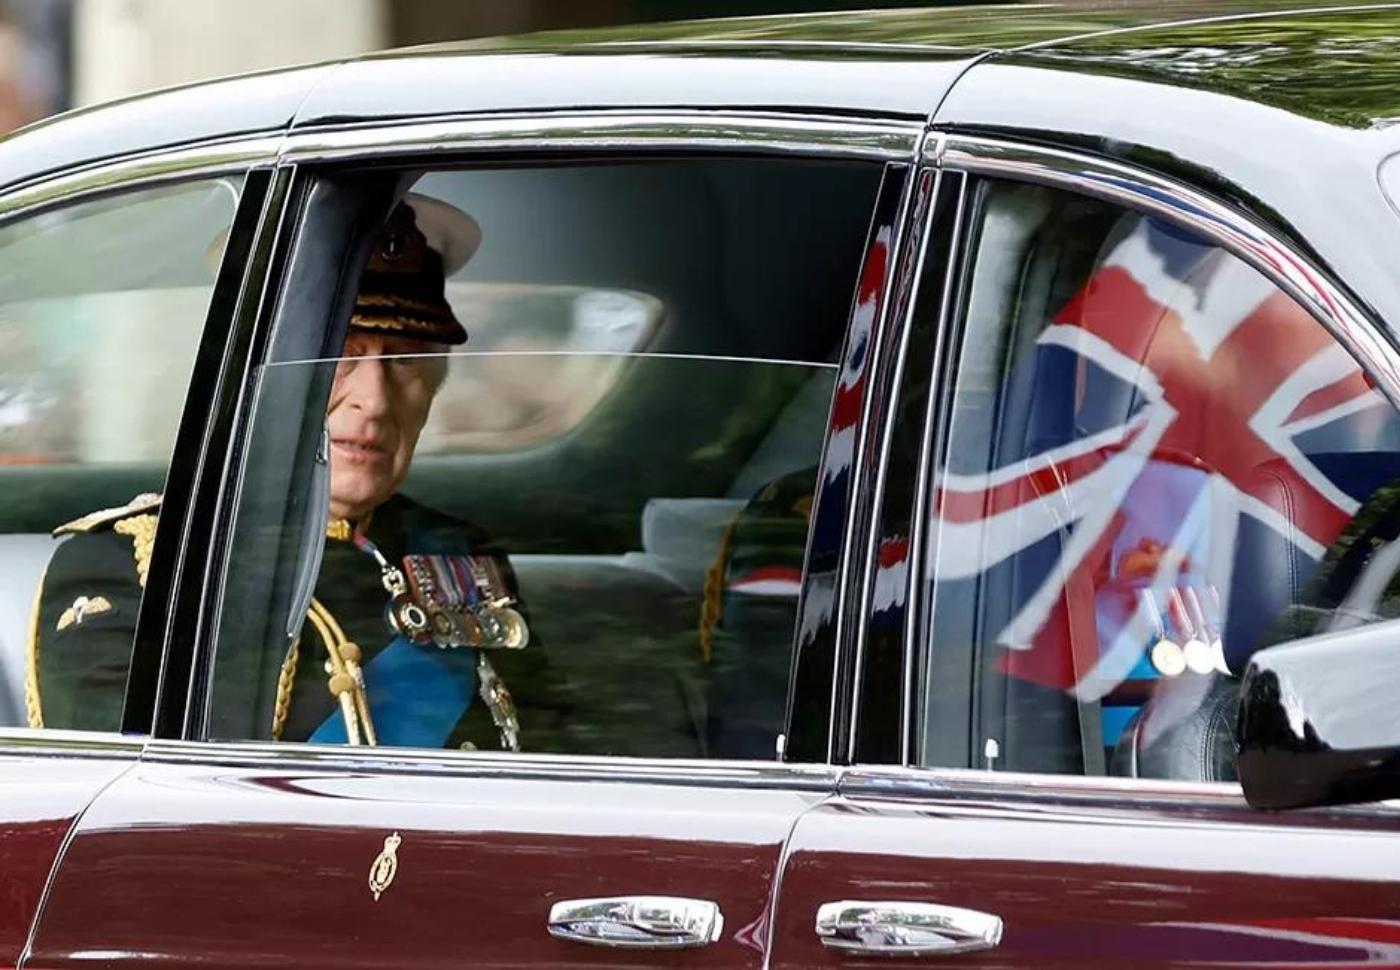 La familia real llega a la Abadía de Westminster para el servicio fúnebre de la reina Isabel II